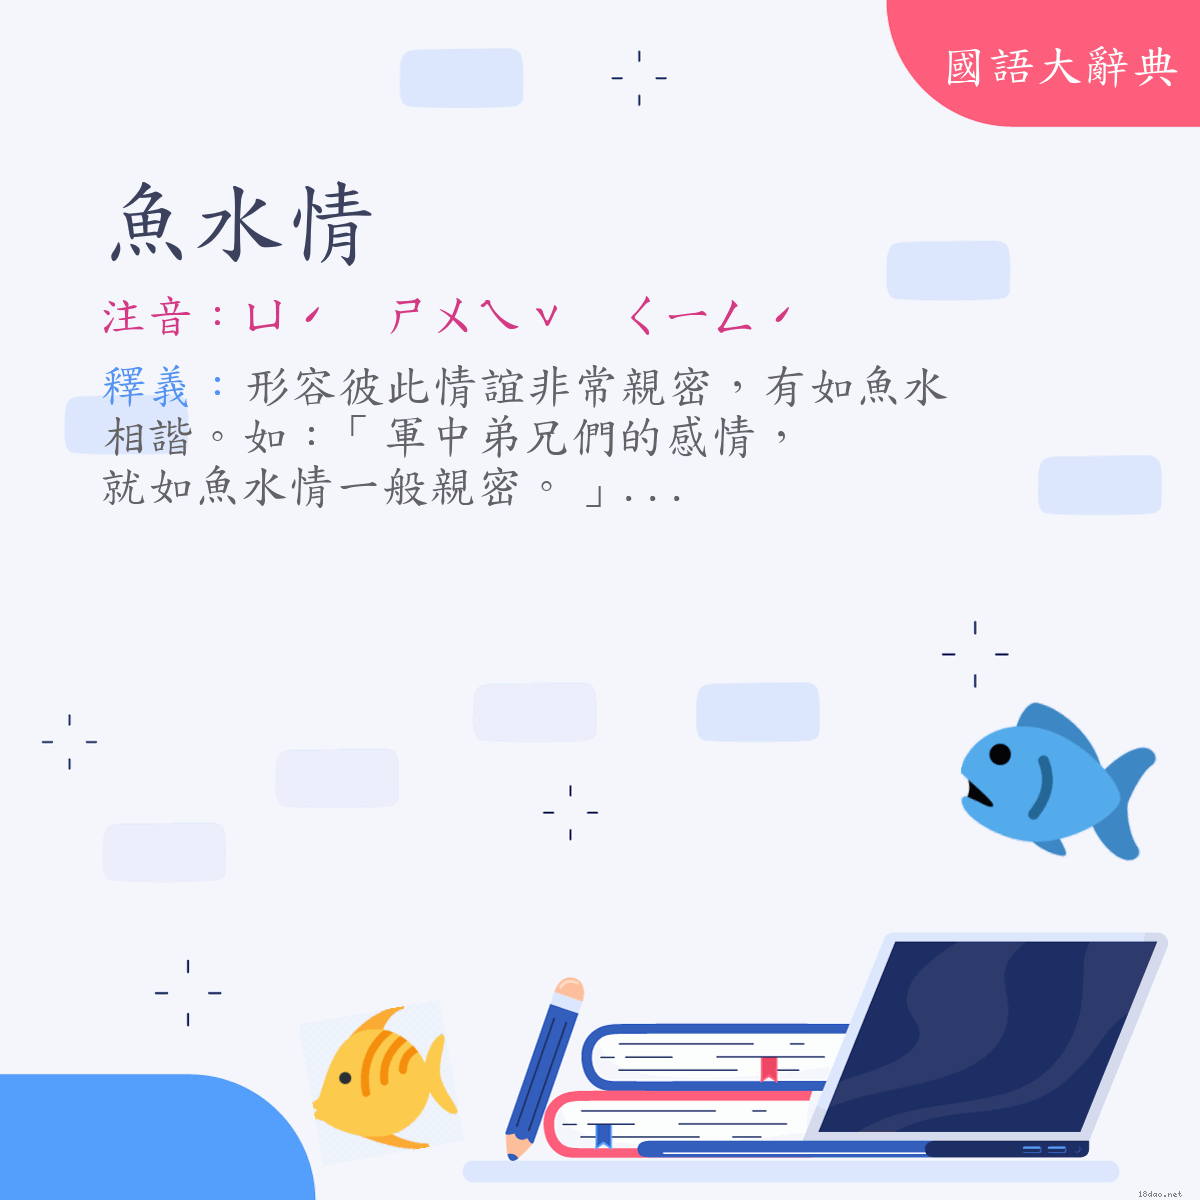 詞語:魚水情 (注音:ㄩˊ　ㄕㄨㄟˇ　ㄑㄧㄥˊ)